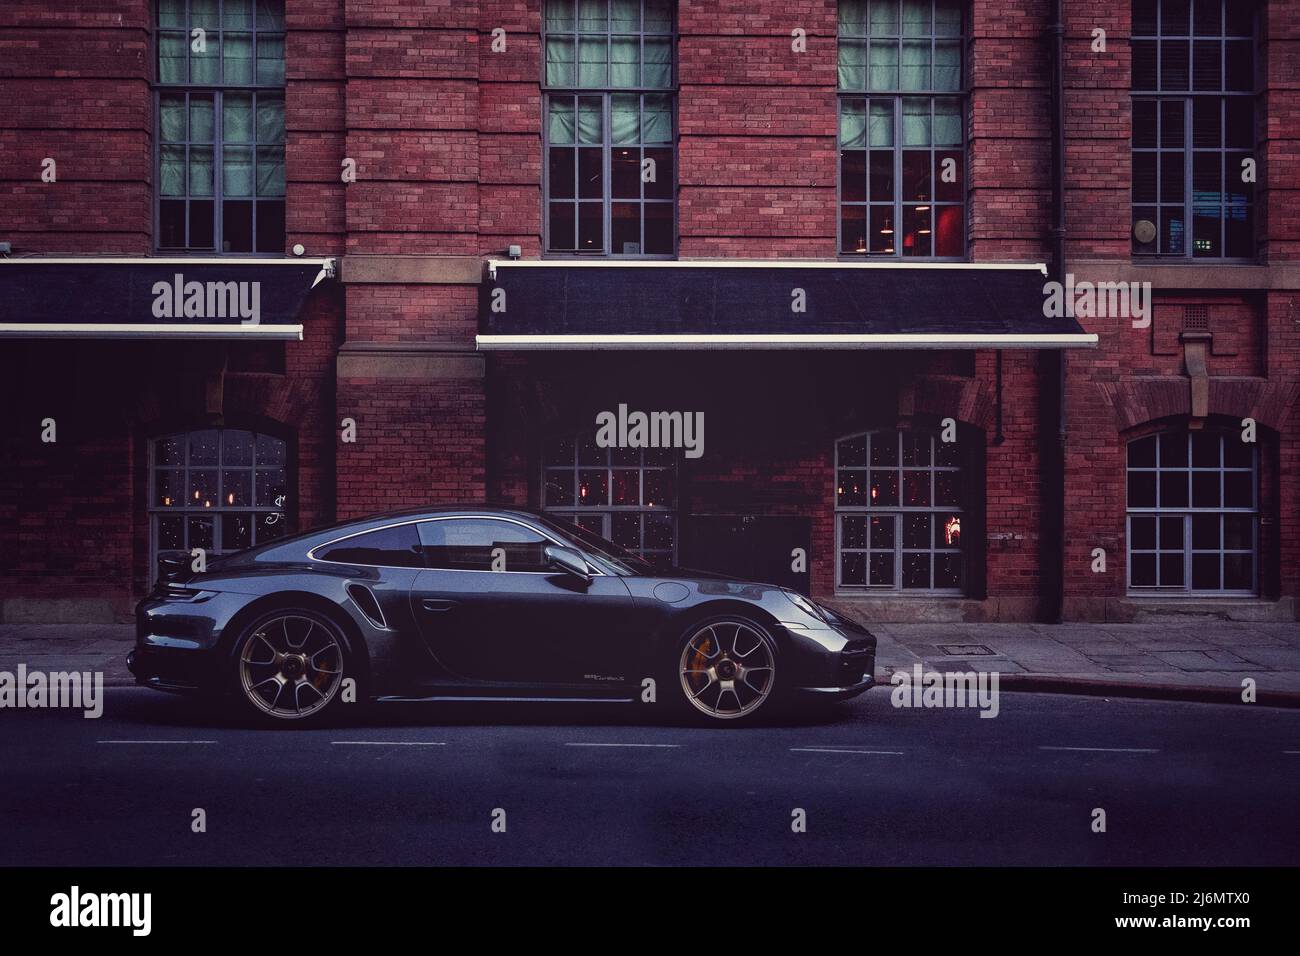 Une voiture de sport de luxe à l'extérieur d'un entrepôt immeuble d'appartements dans un quartier attrayant d'une ville britannique comme Londres Banque D'Images